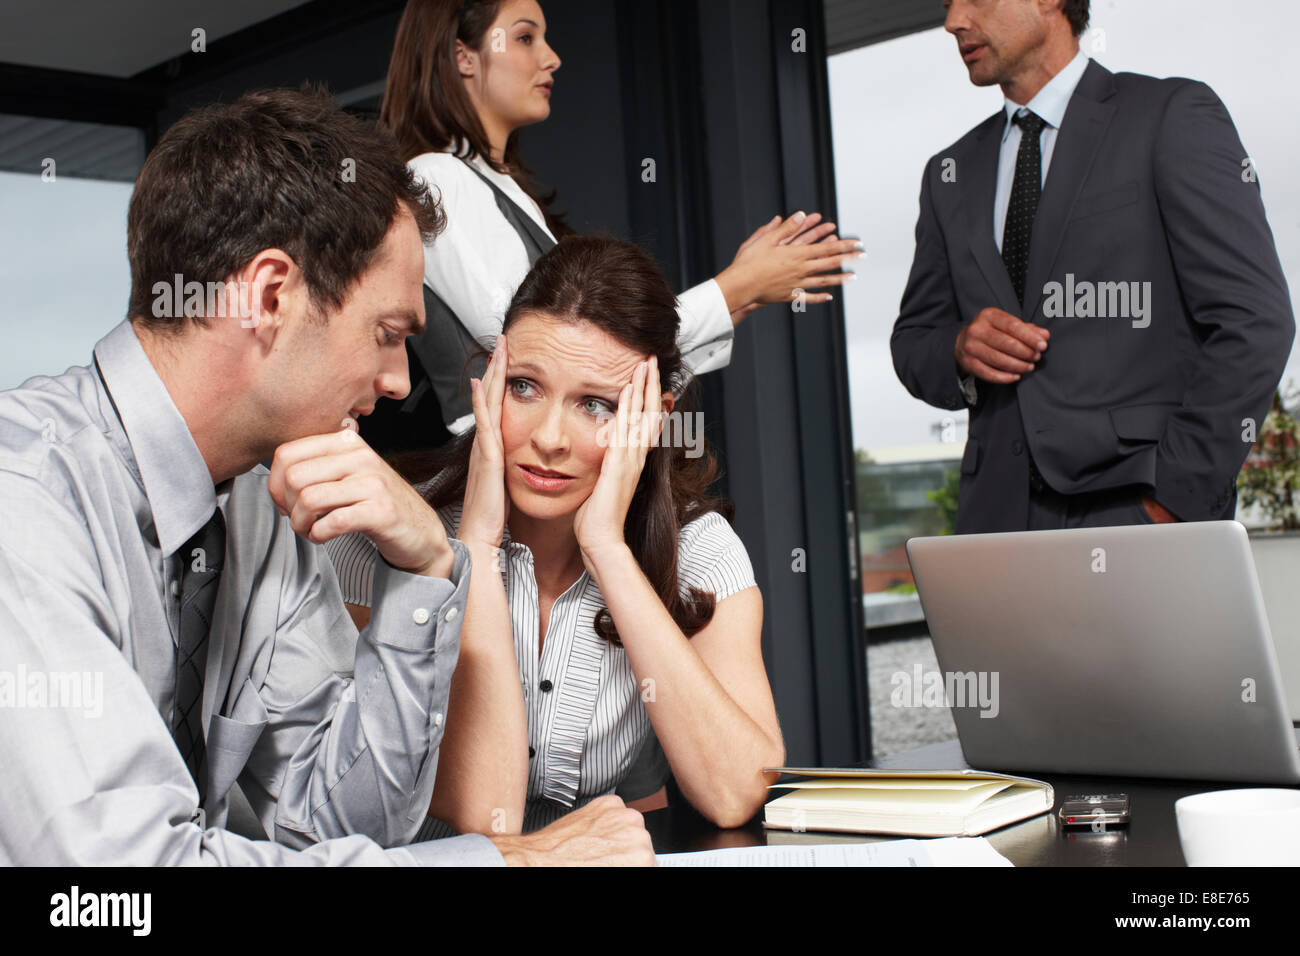 Скрывать в общении с. Люди в офисе разговаривают. Шум в офисе. Женщины ругаются в офисе. Общение коллег в офисе.